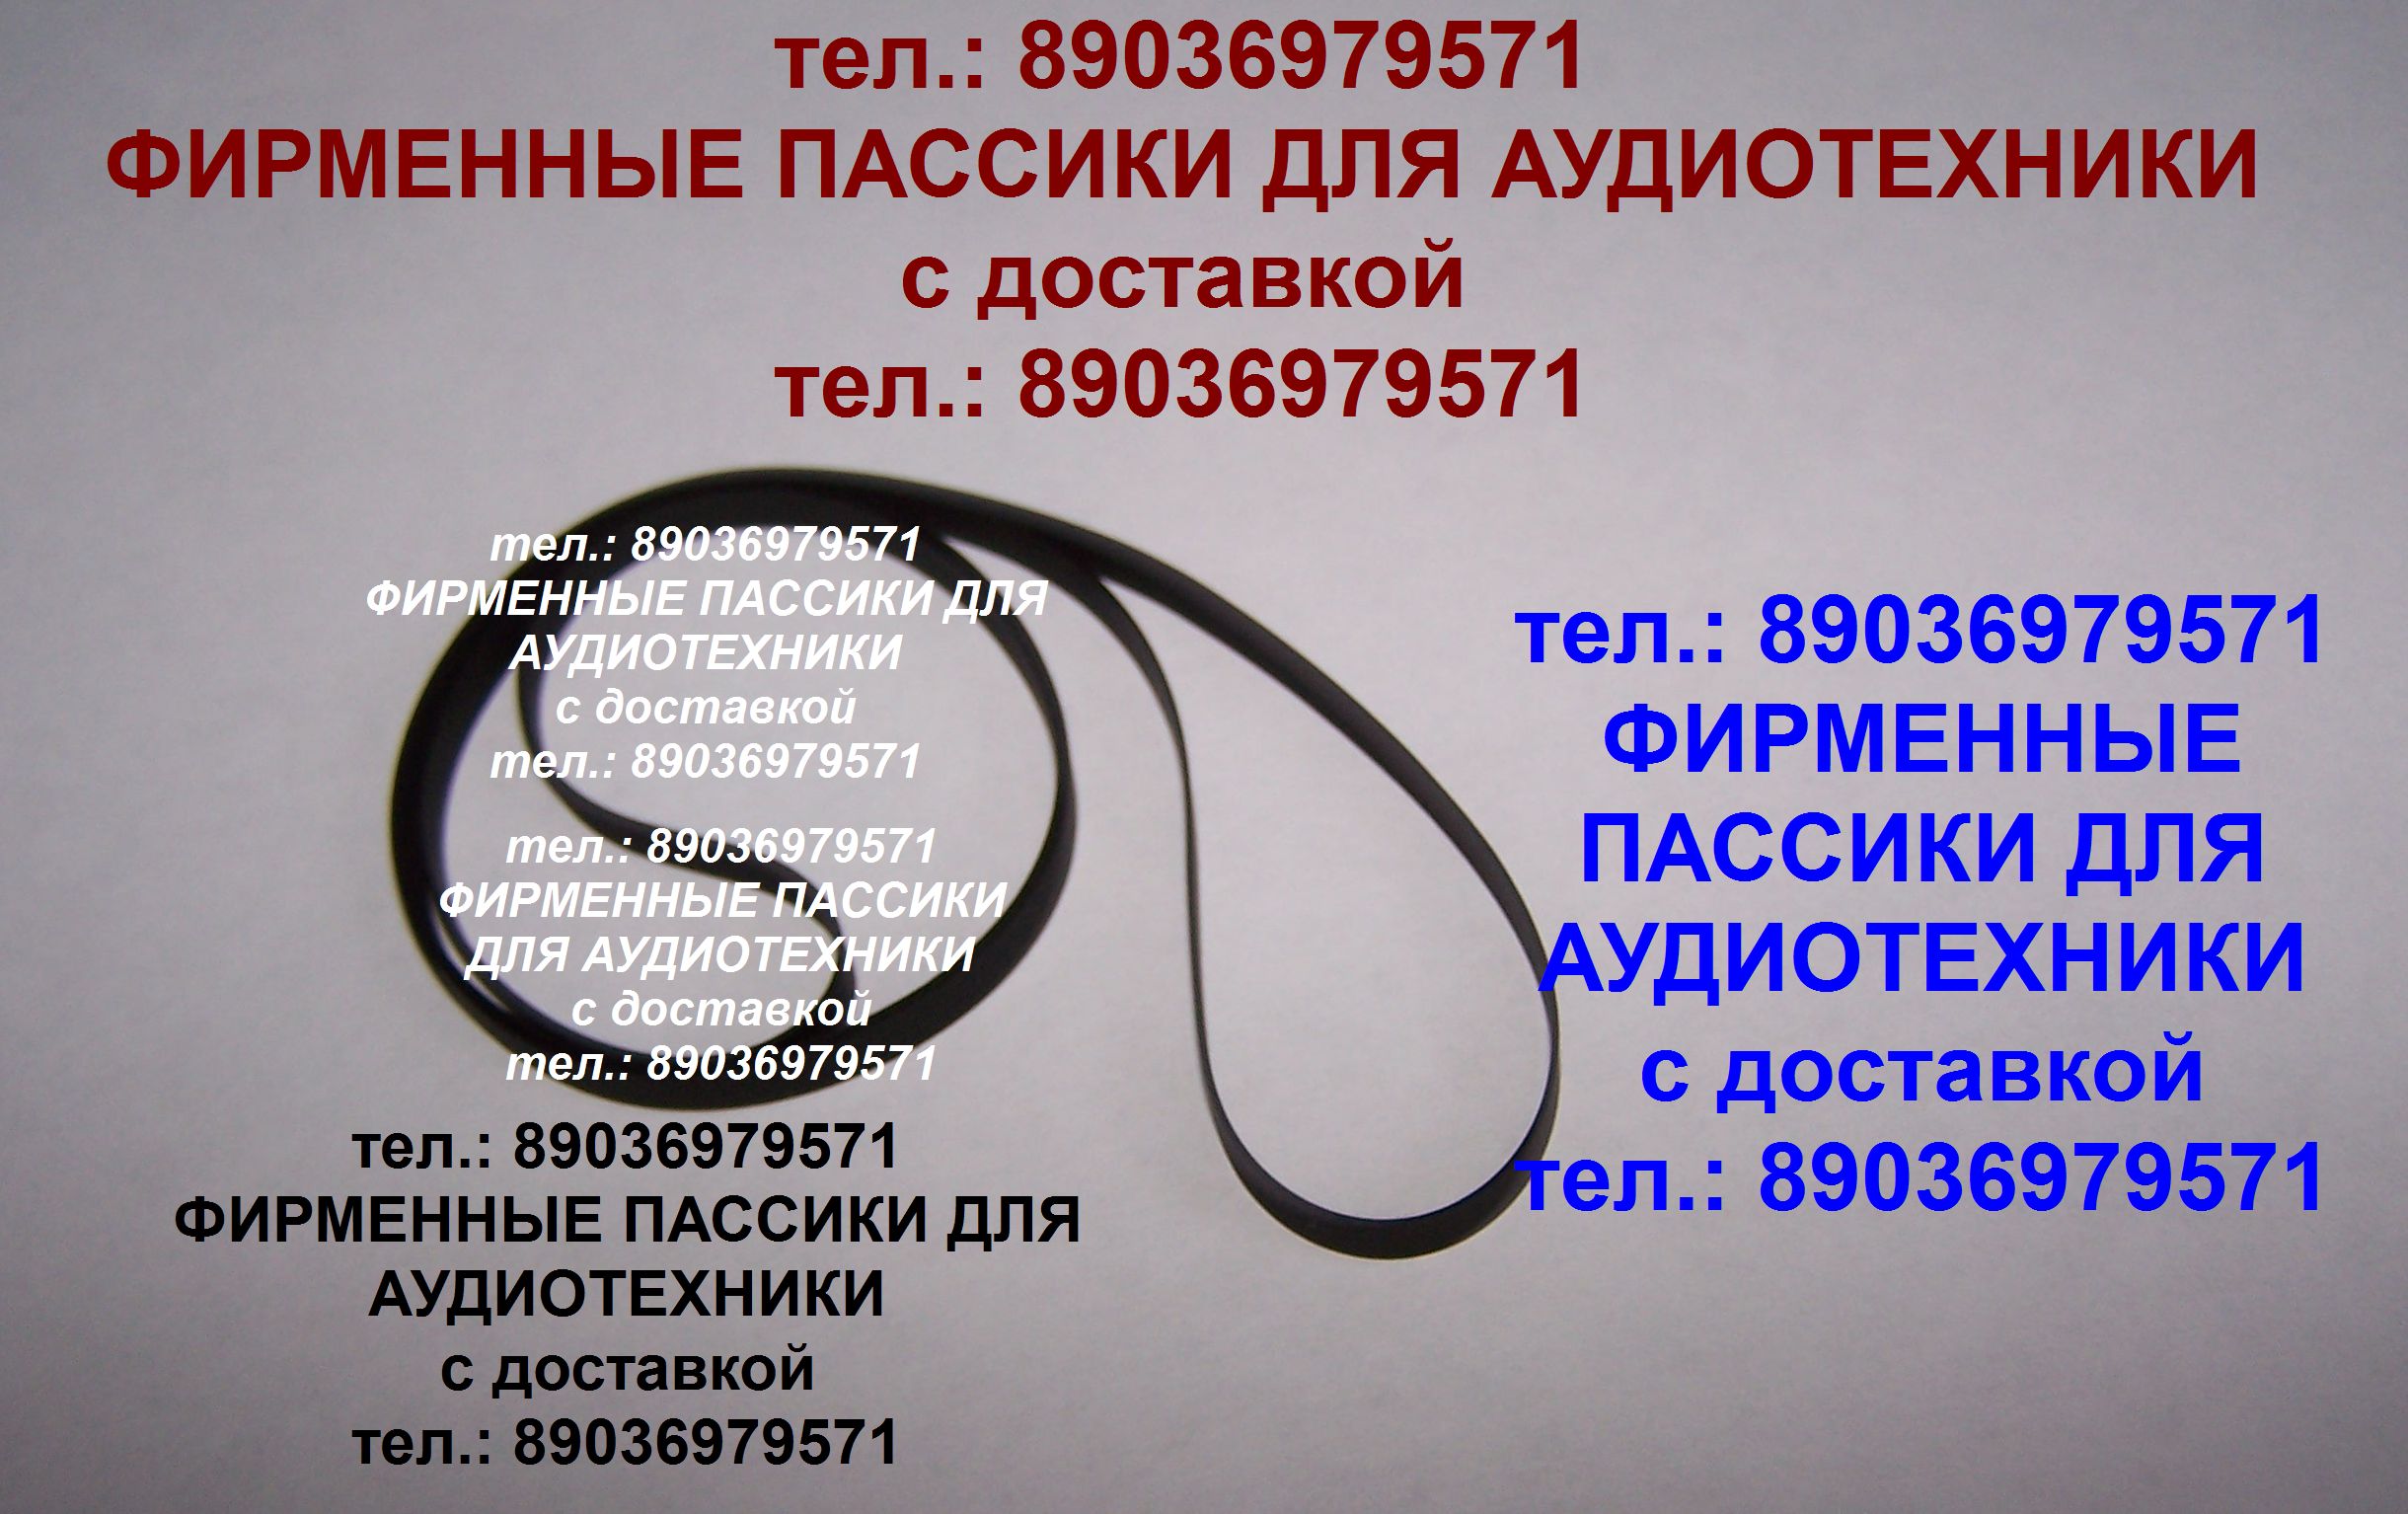 пассик для Pioneer PL-1050 ремень Пионер в городе Москва, фото 1, телефон продавца: +7 (903) 697-95-71